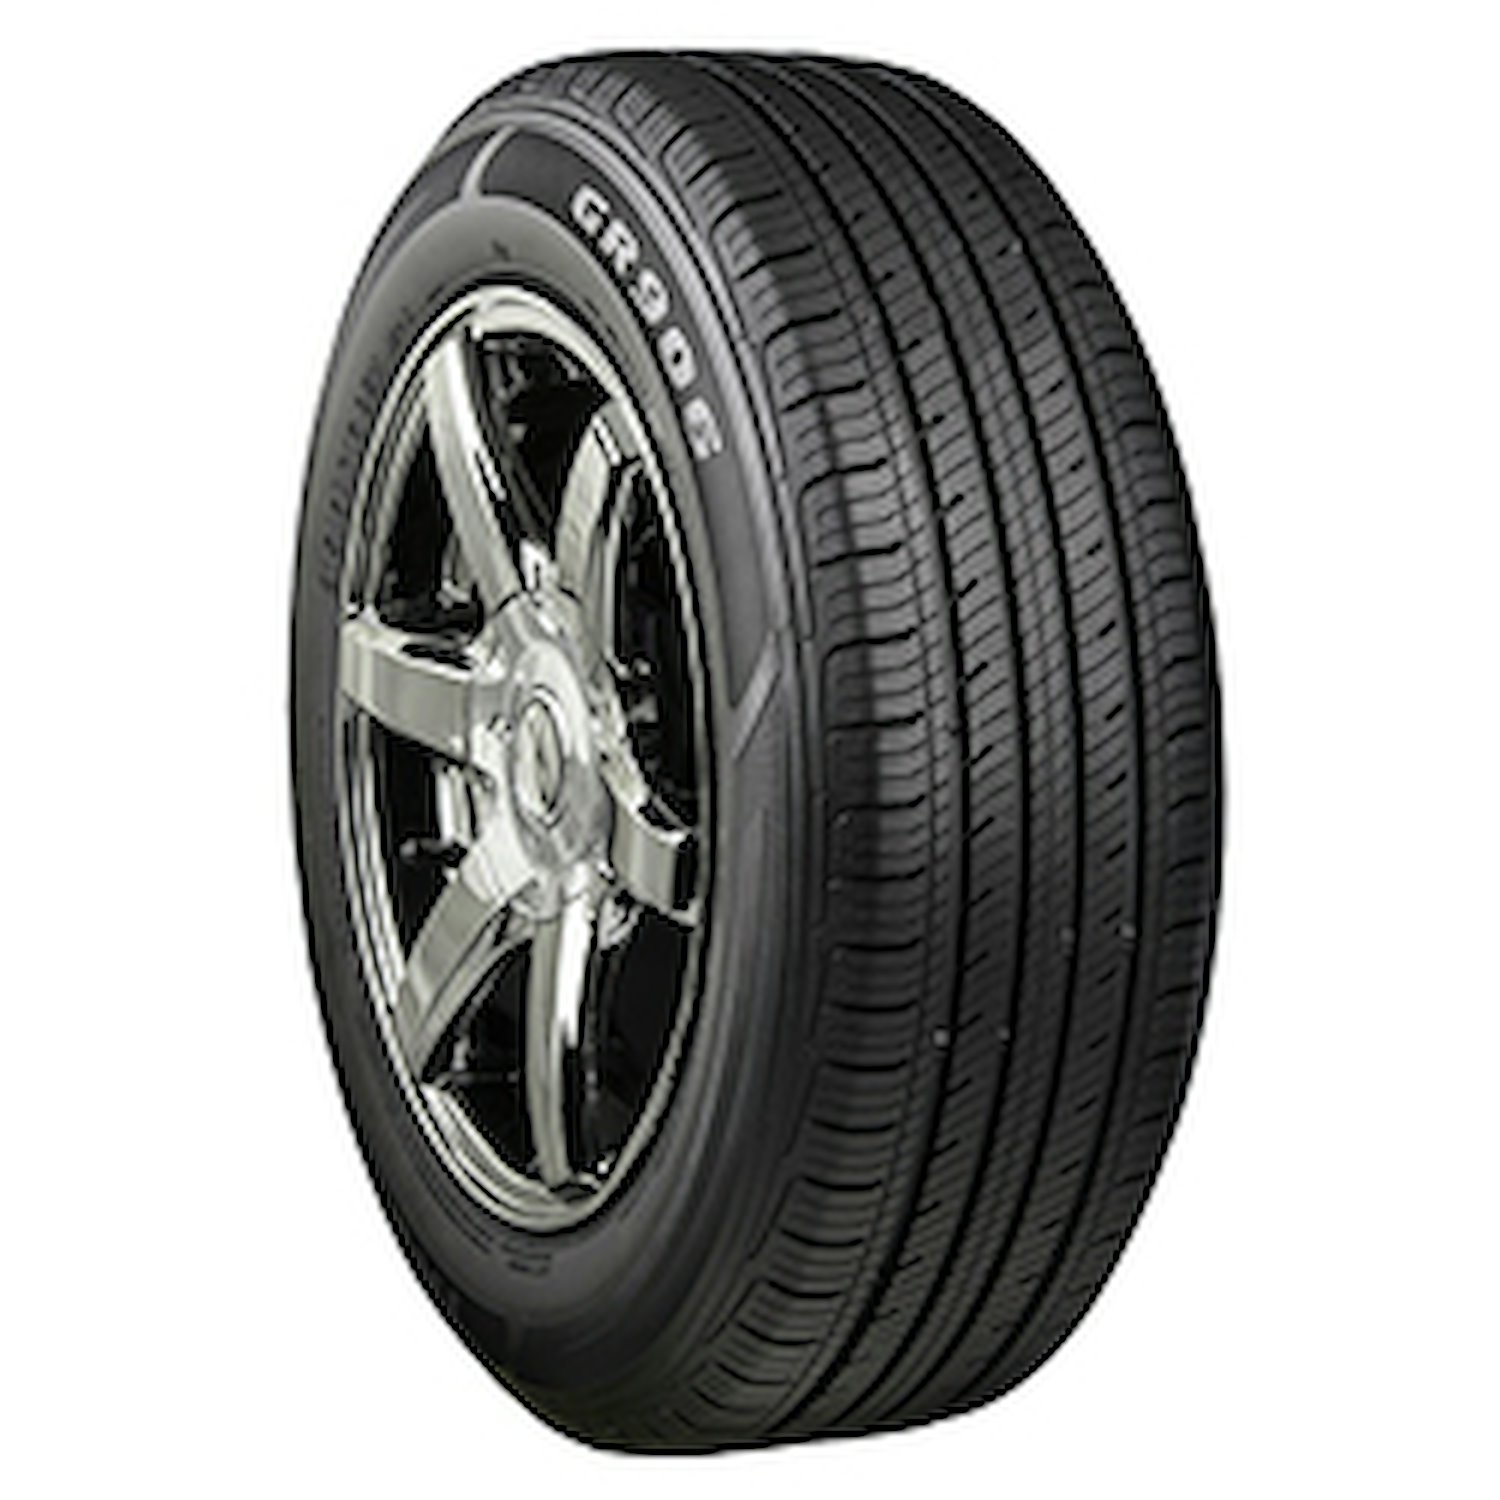 GR906 Tire, 205/70R16 97H